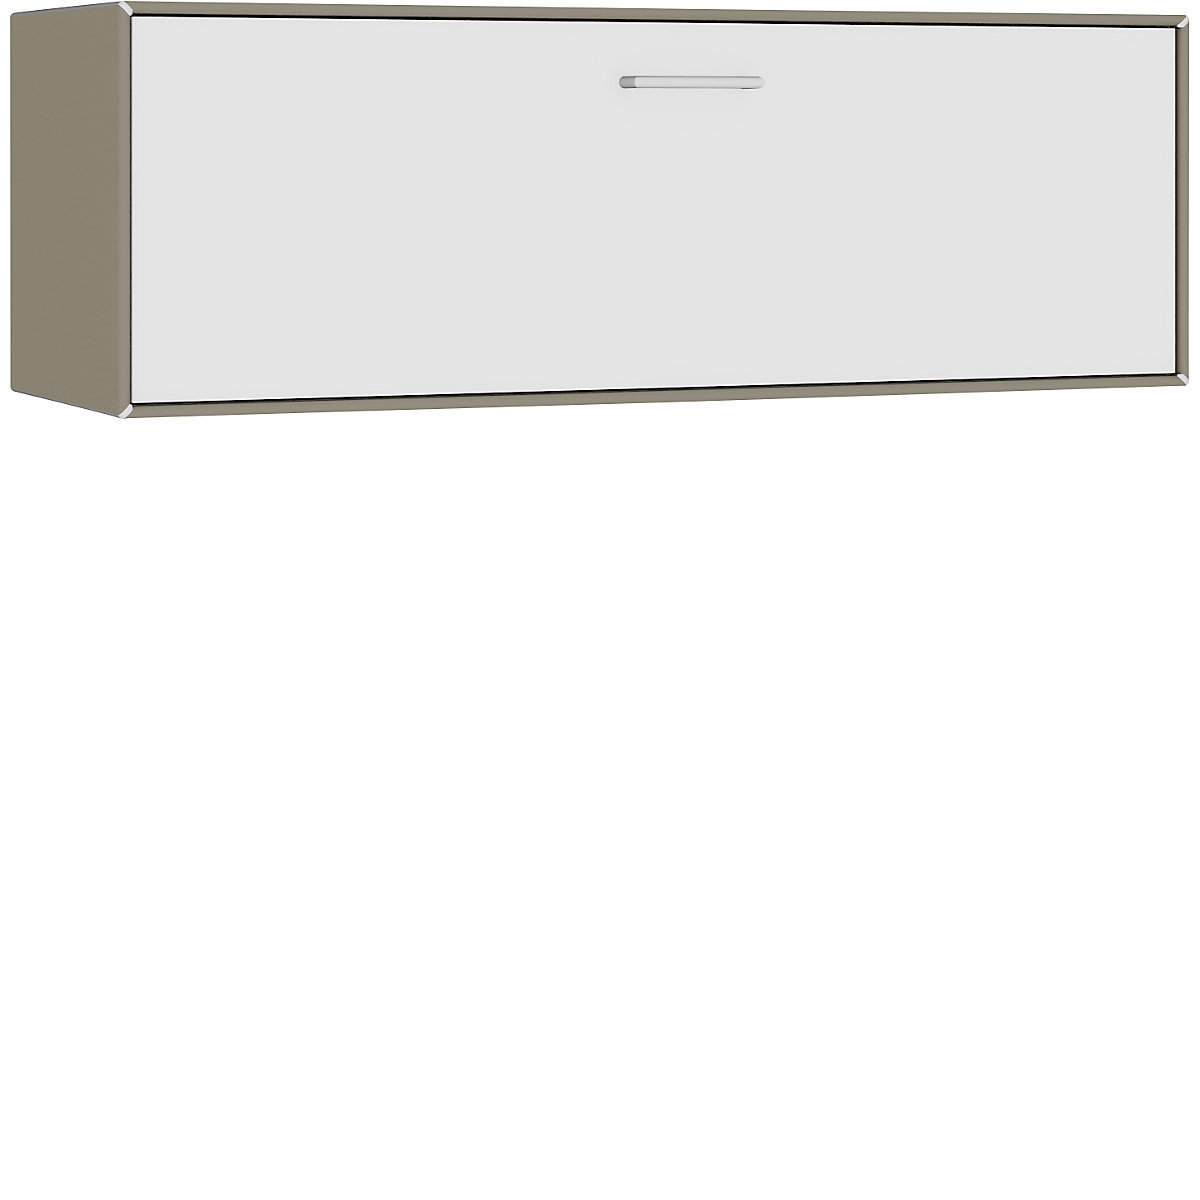 mauser – Cuie individuală, suspendată, 1 sertar, lățime 1155 mm, gri-bej / alb pur